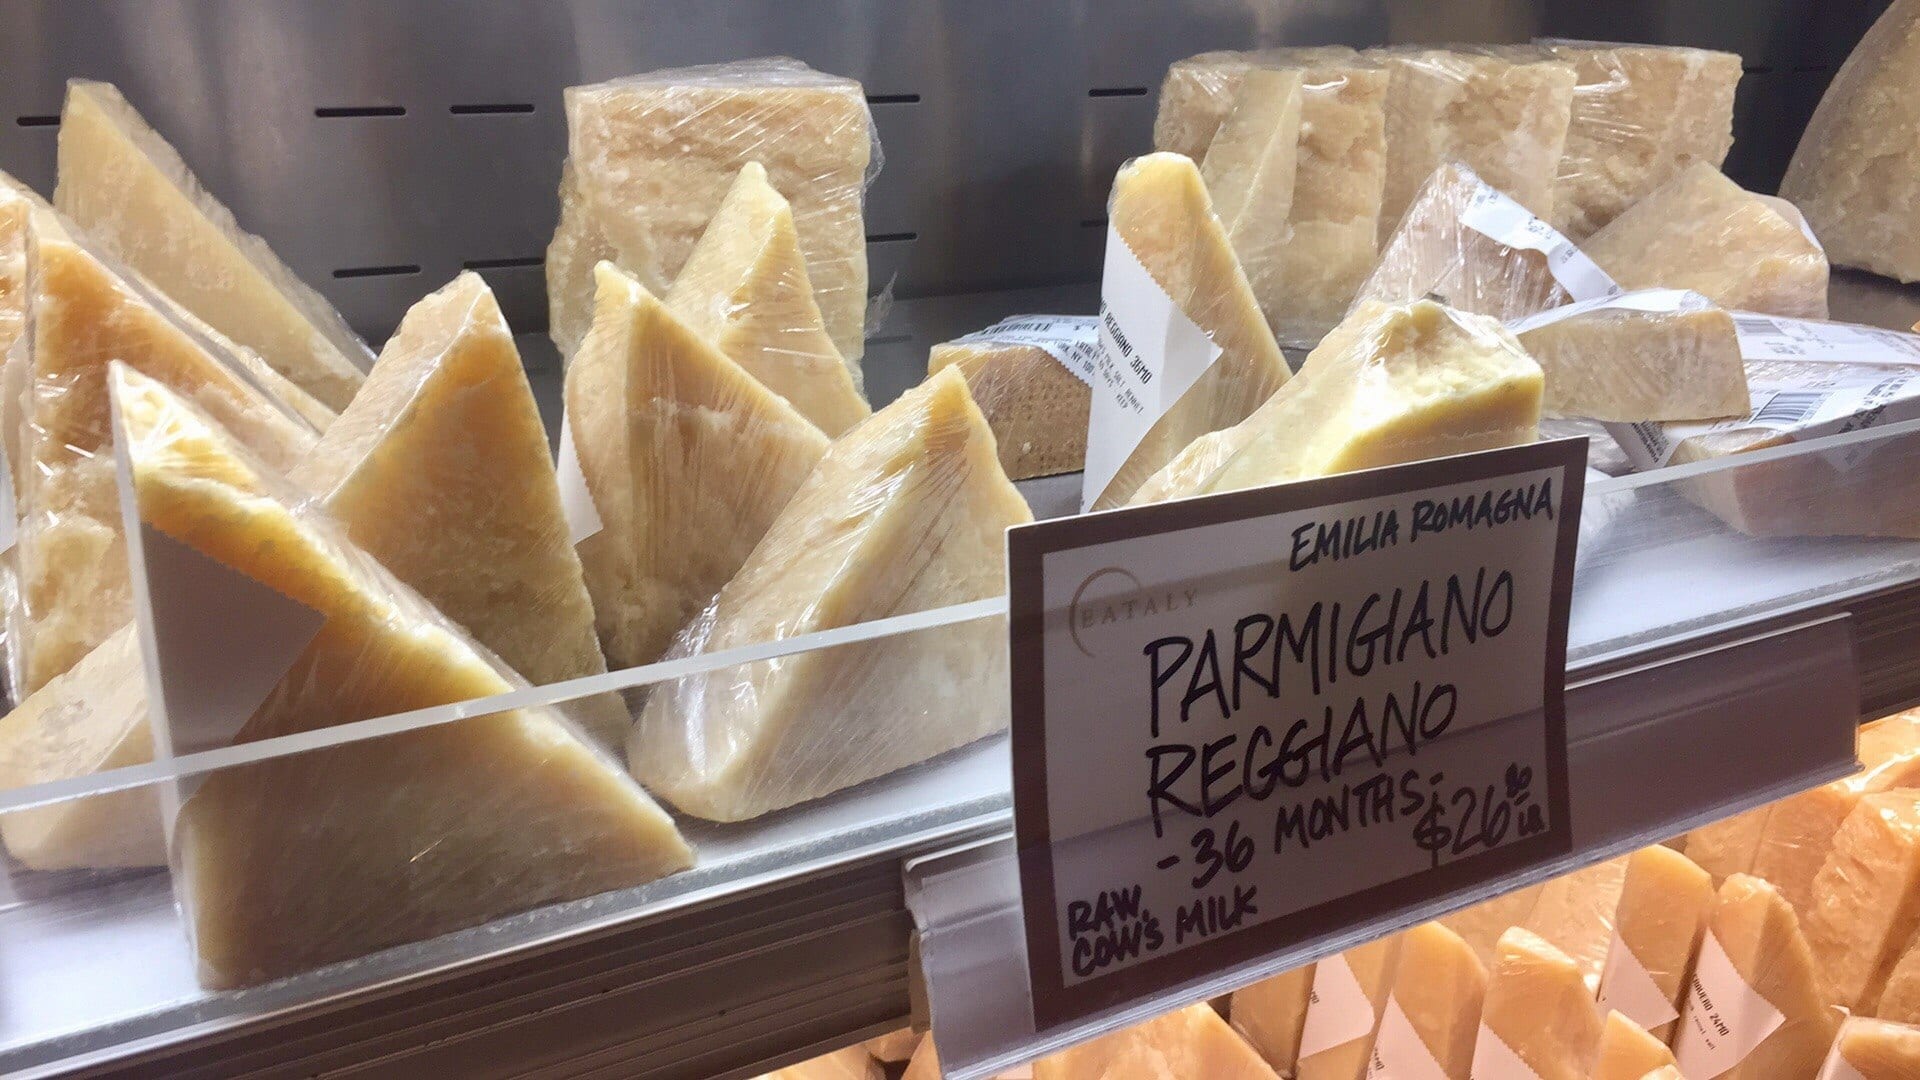 Parmigiano Reggiano at Eataly